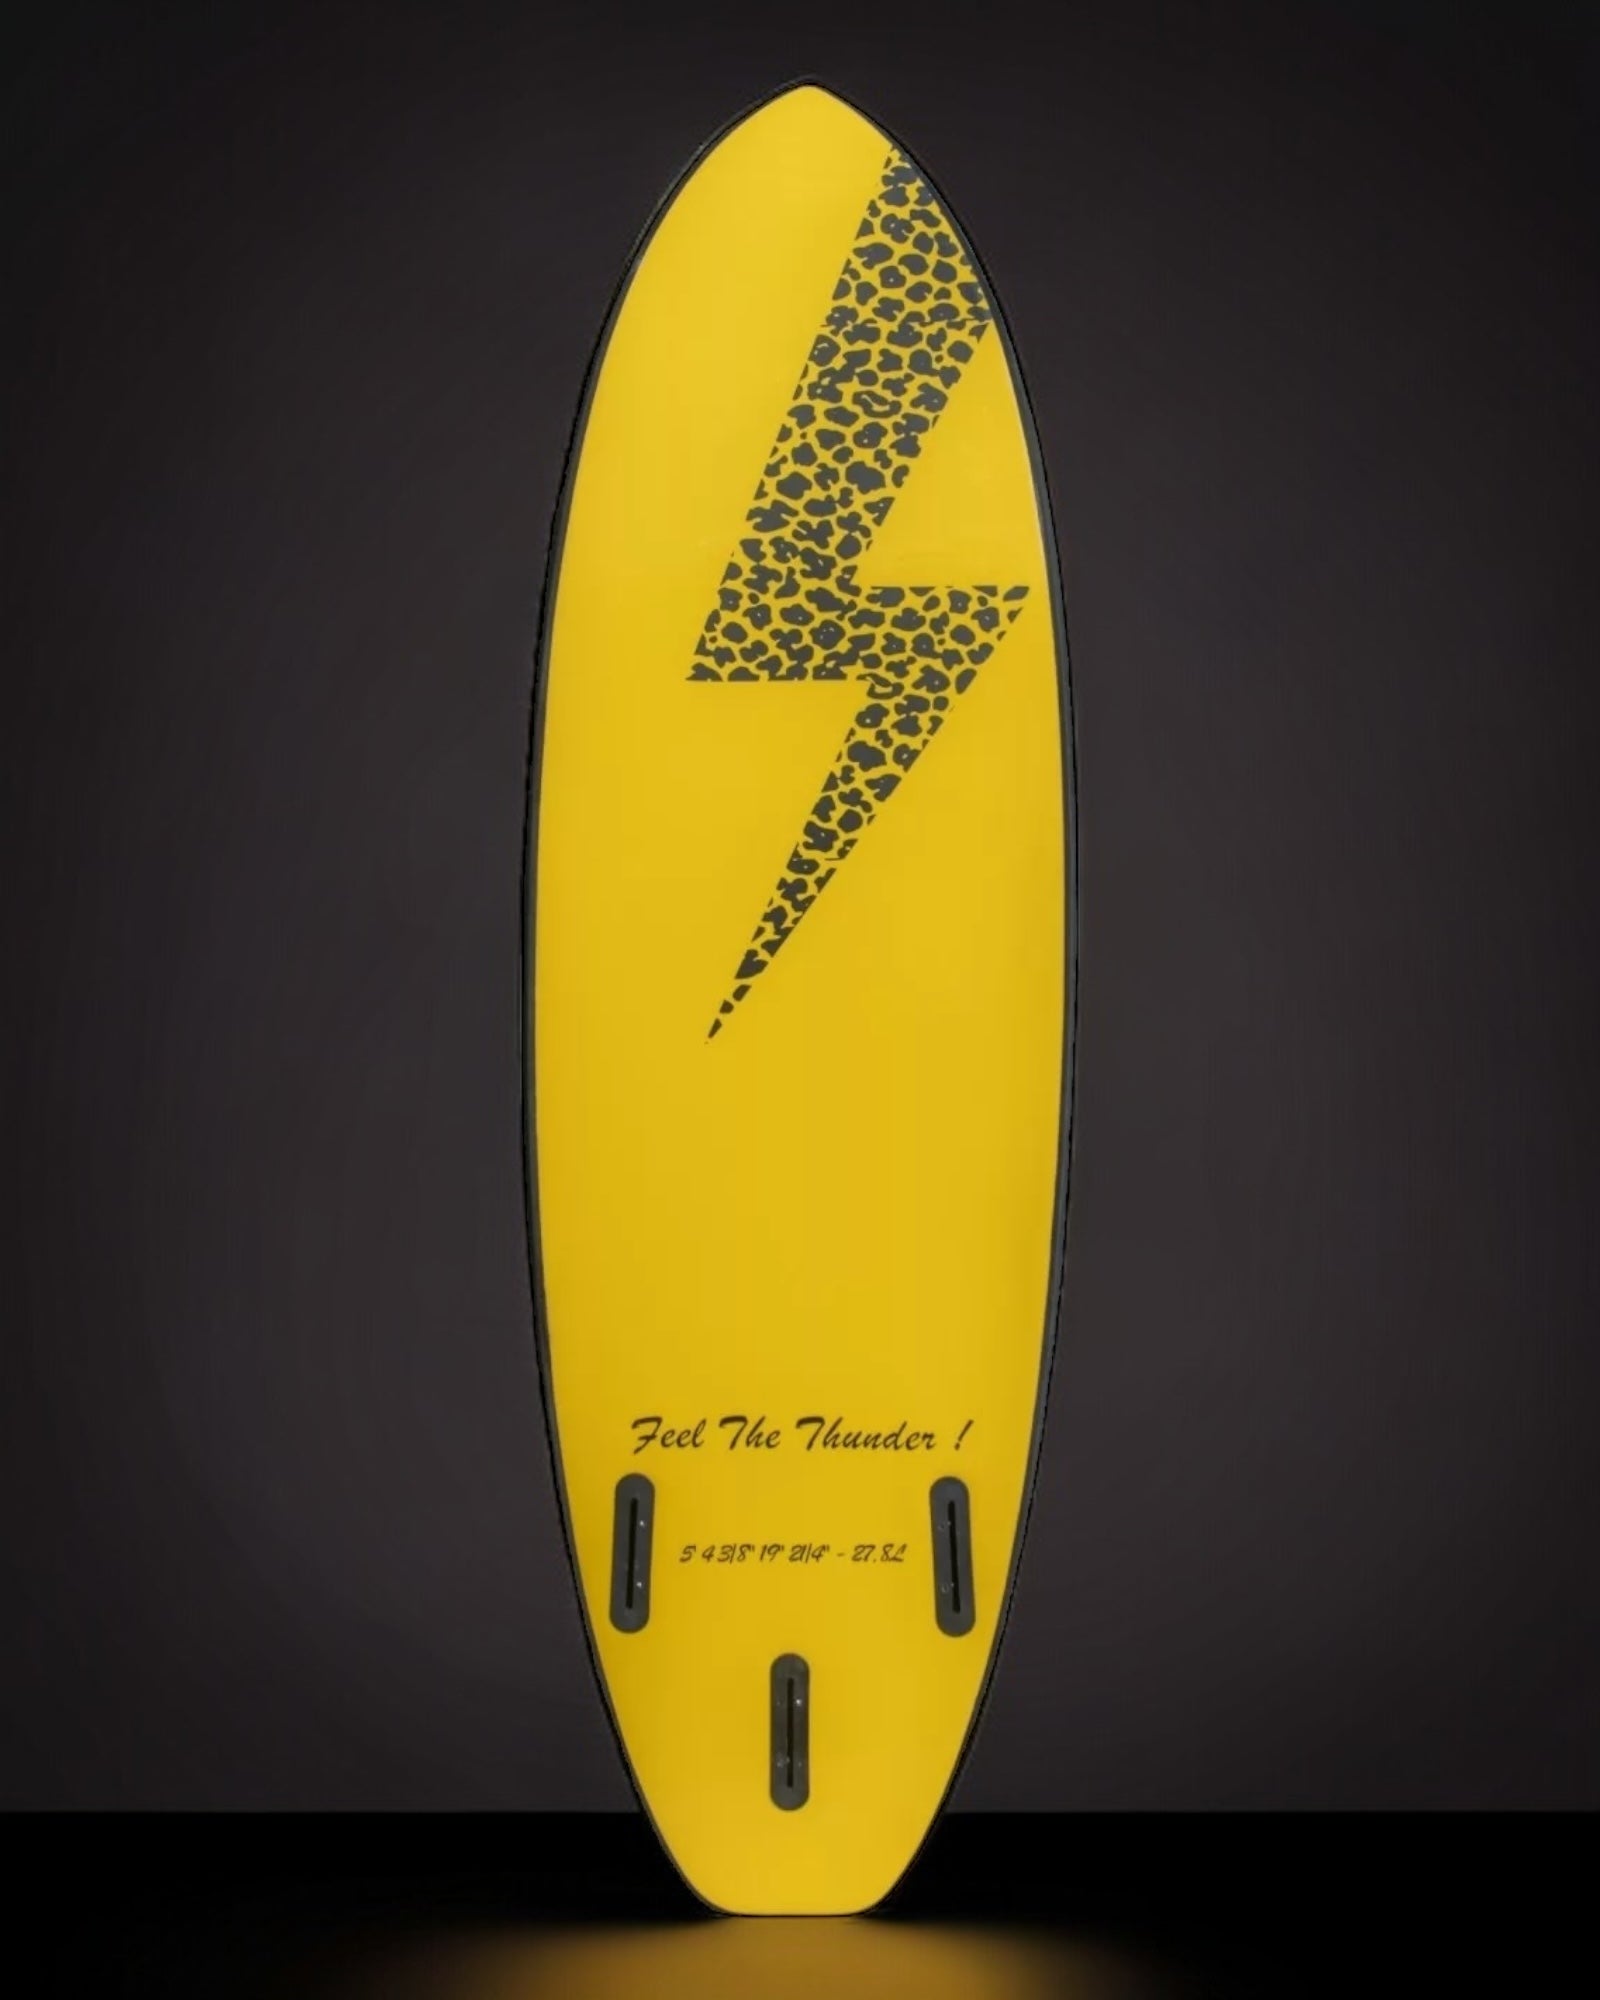 Zeus Ninja 5'4product_type#surf_#surfshop#_zeus-surfboards_